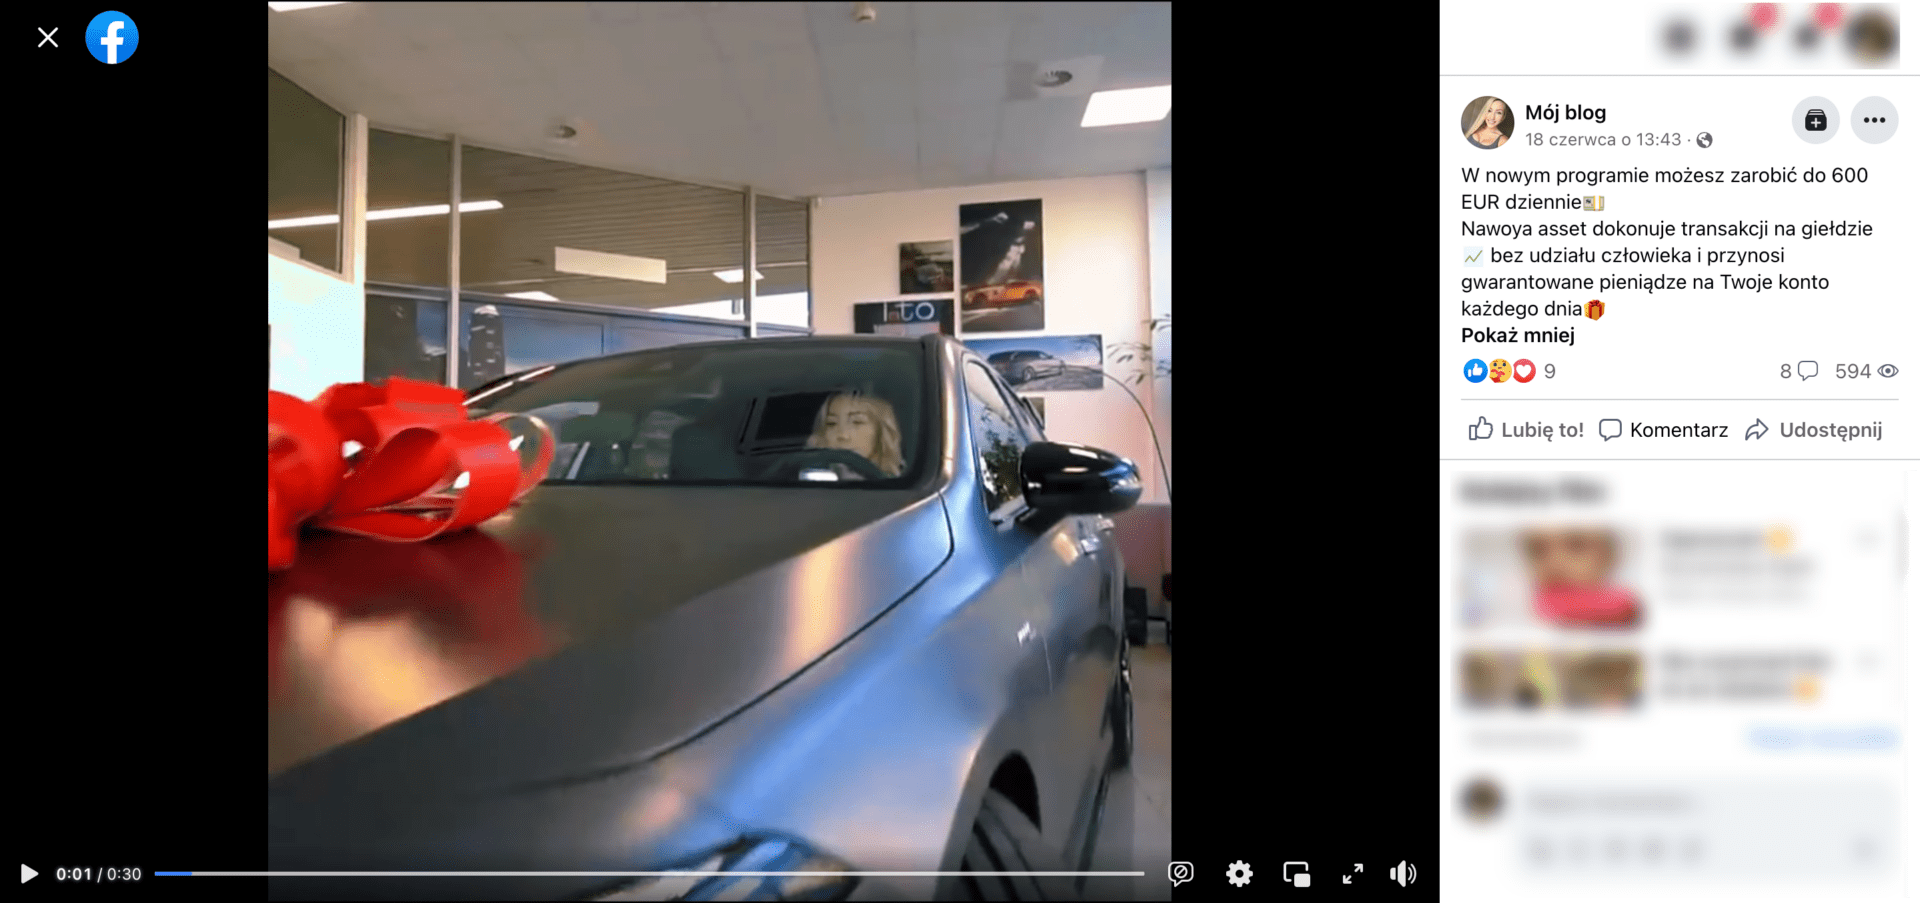 Zrzut ekranu posta, w którym zamieszczono omawiane nagranie. Widoczna jest kobieta z blond włosami w ciemnym samochodzie z czerwoną kokardą prezentową.